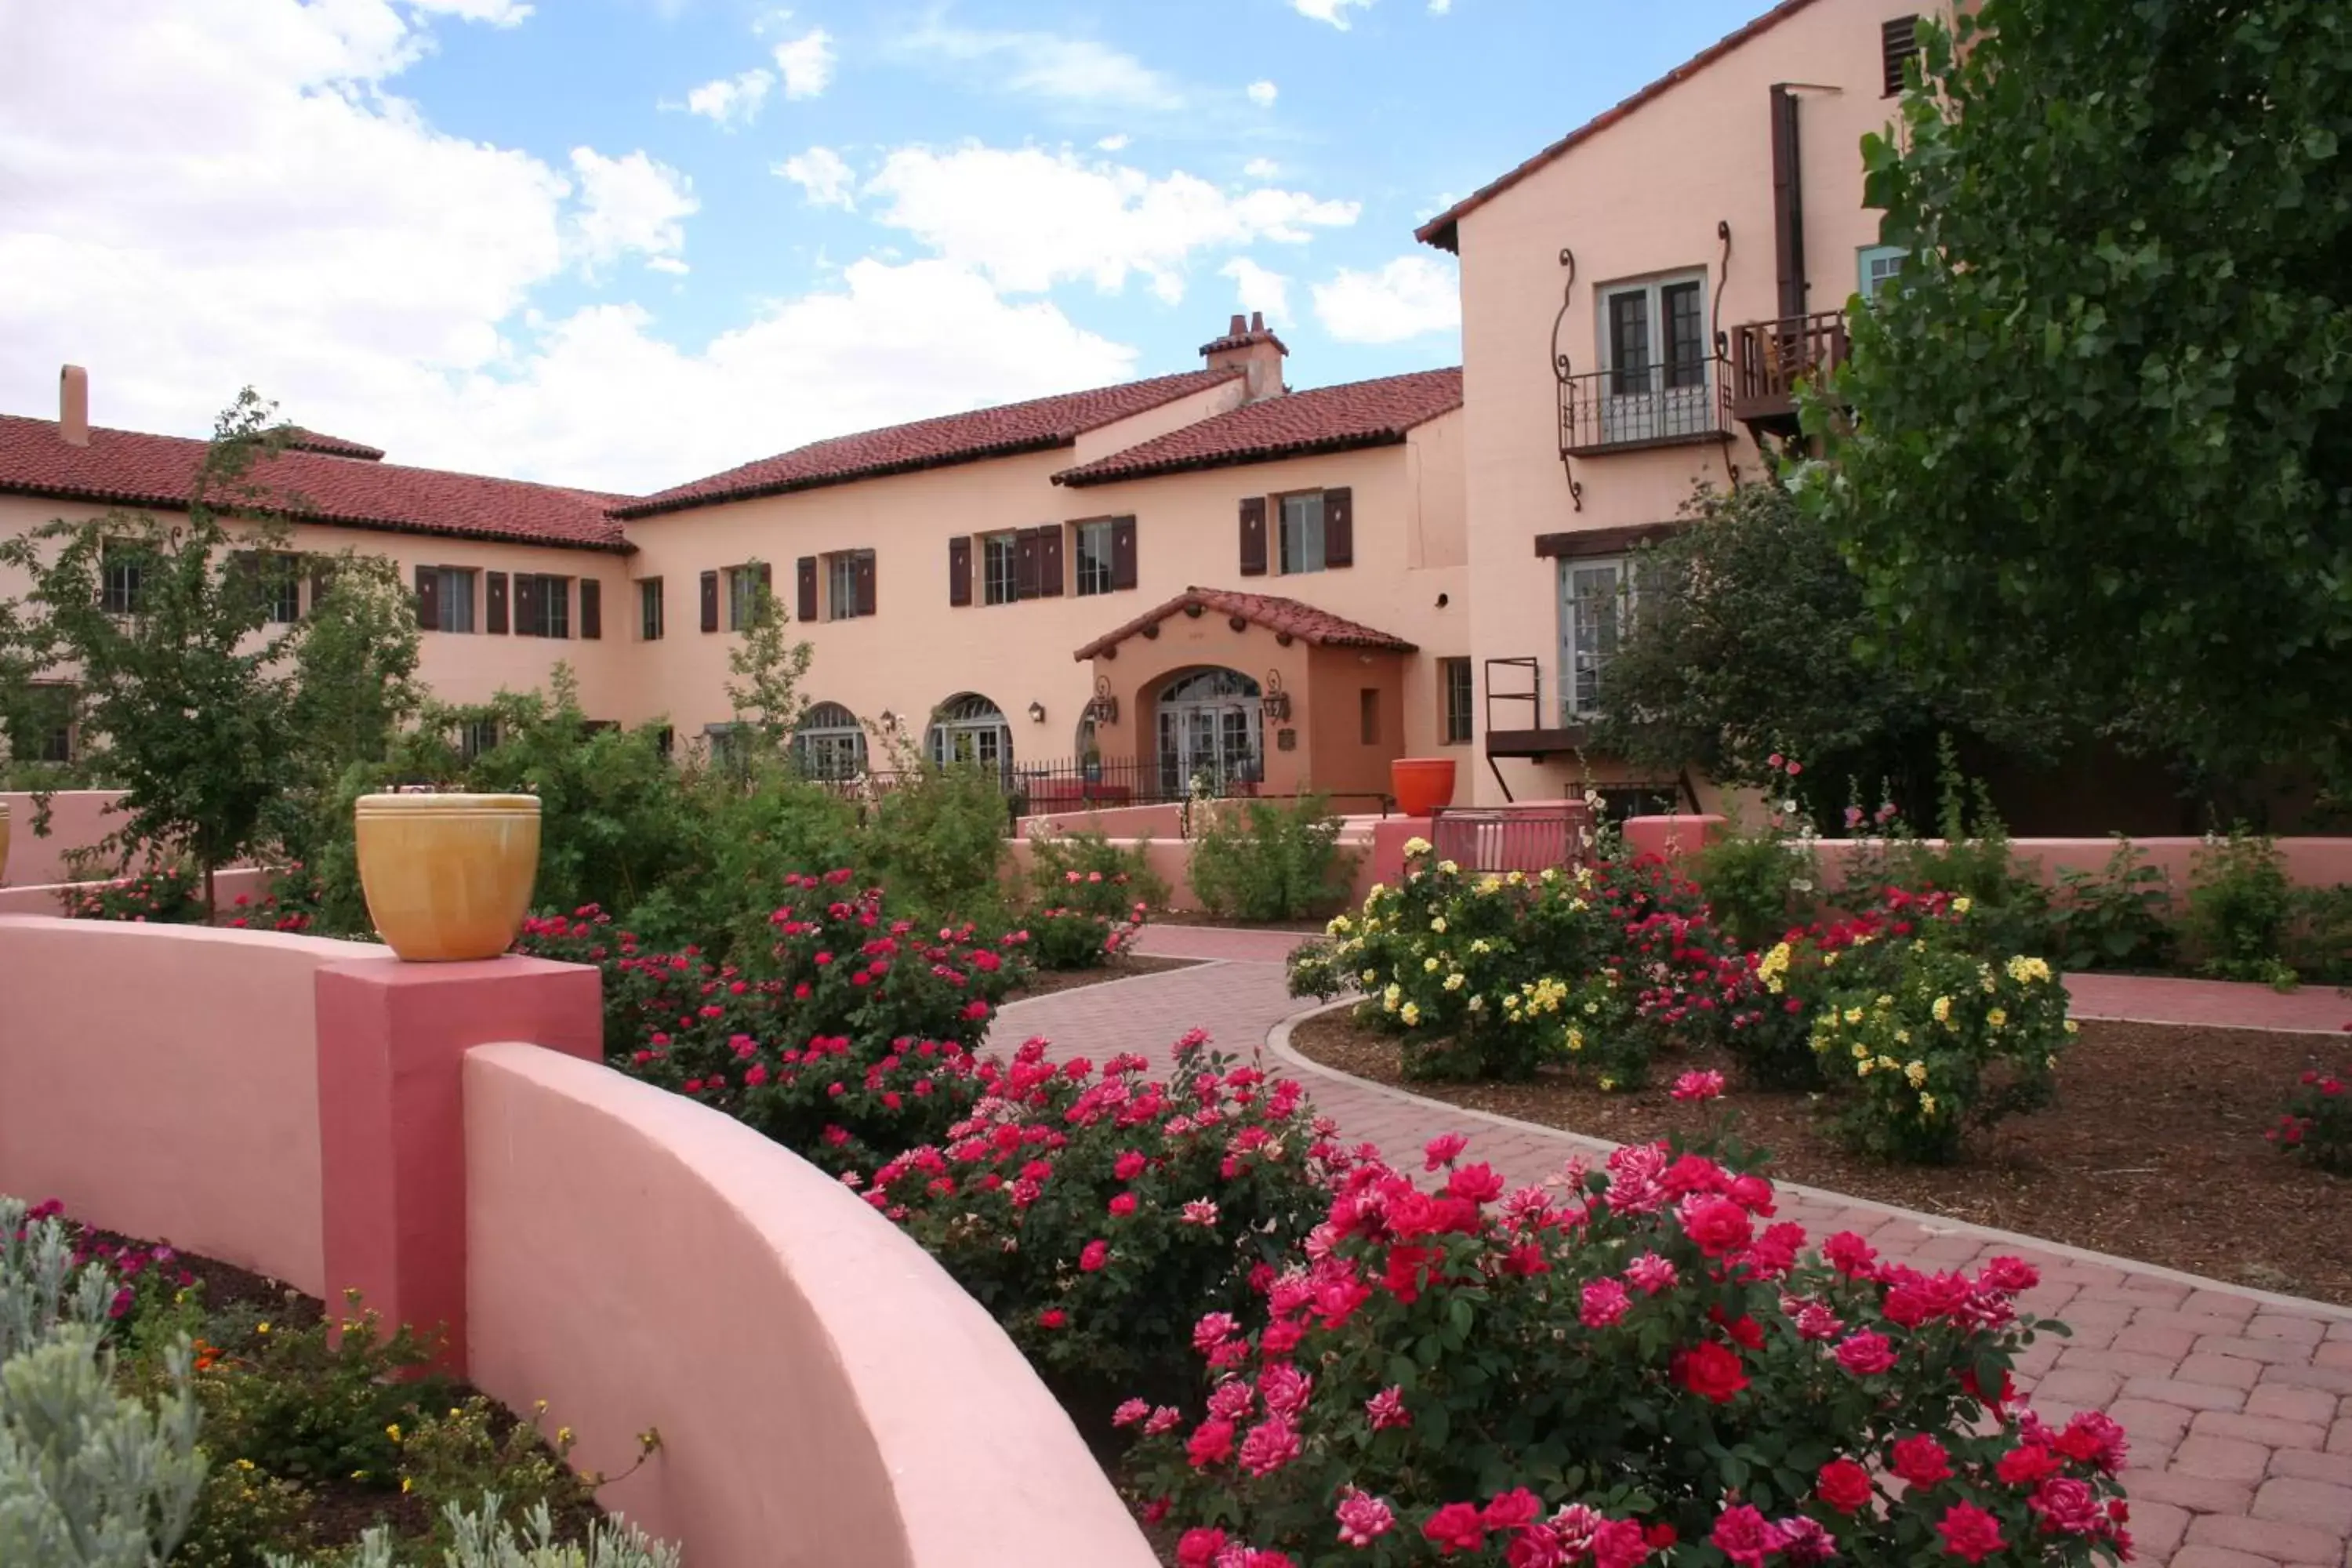 Facade/entrance, Property Building in La Posada Hotel and Gardens